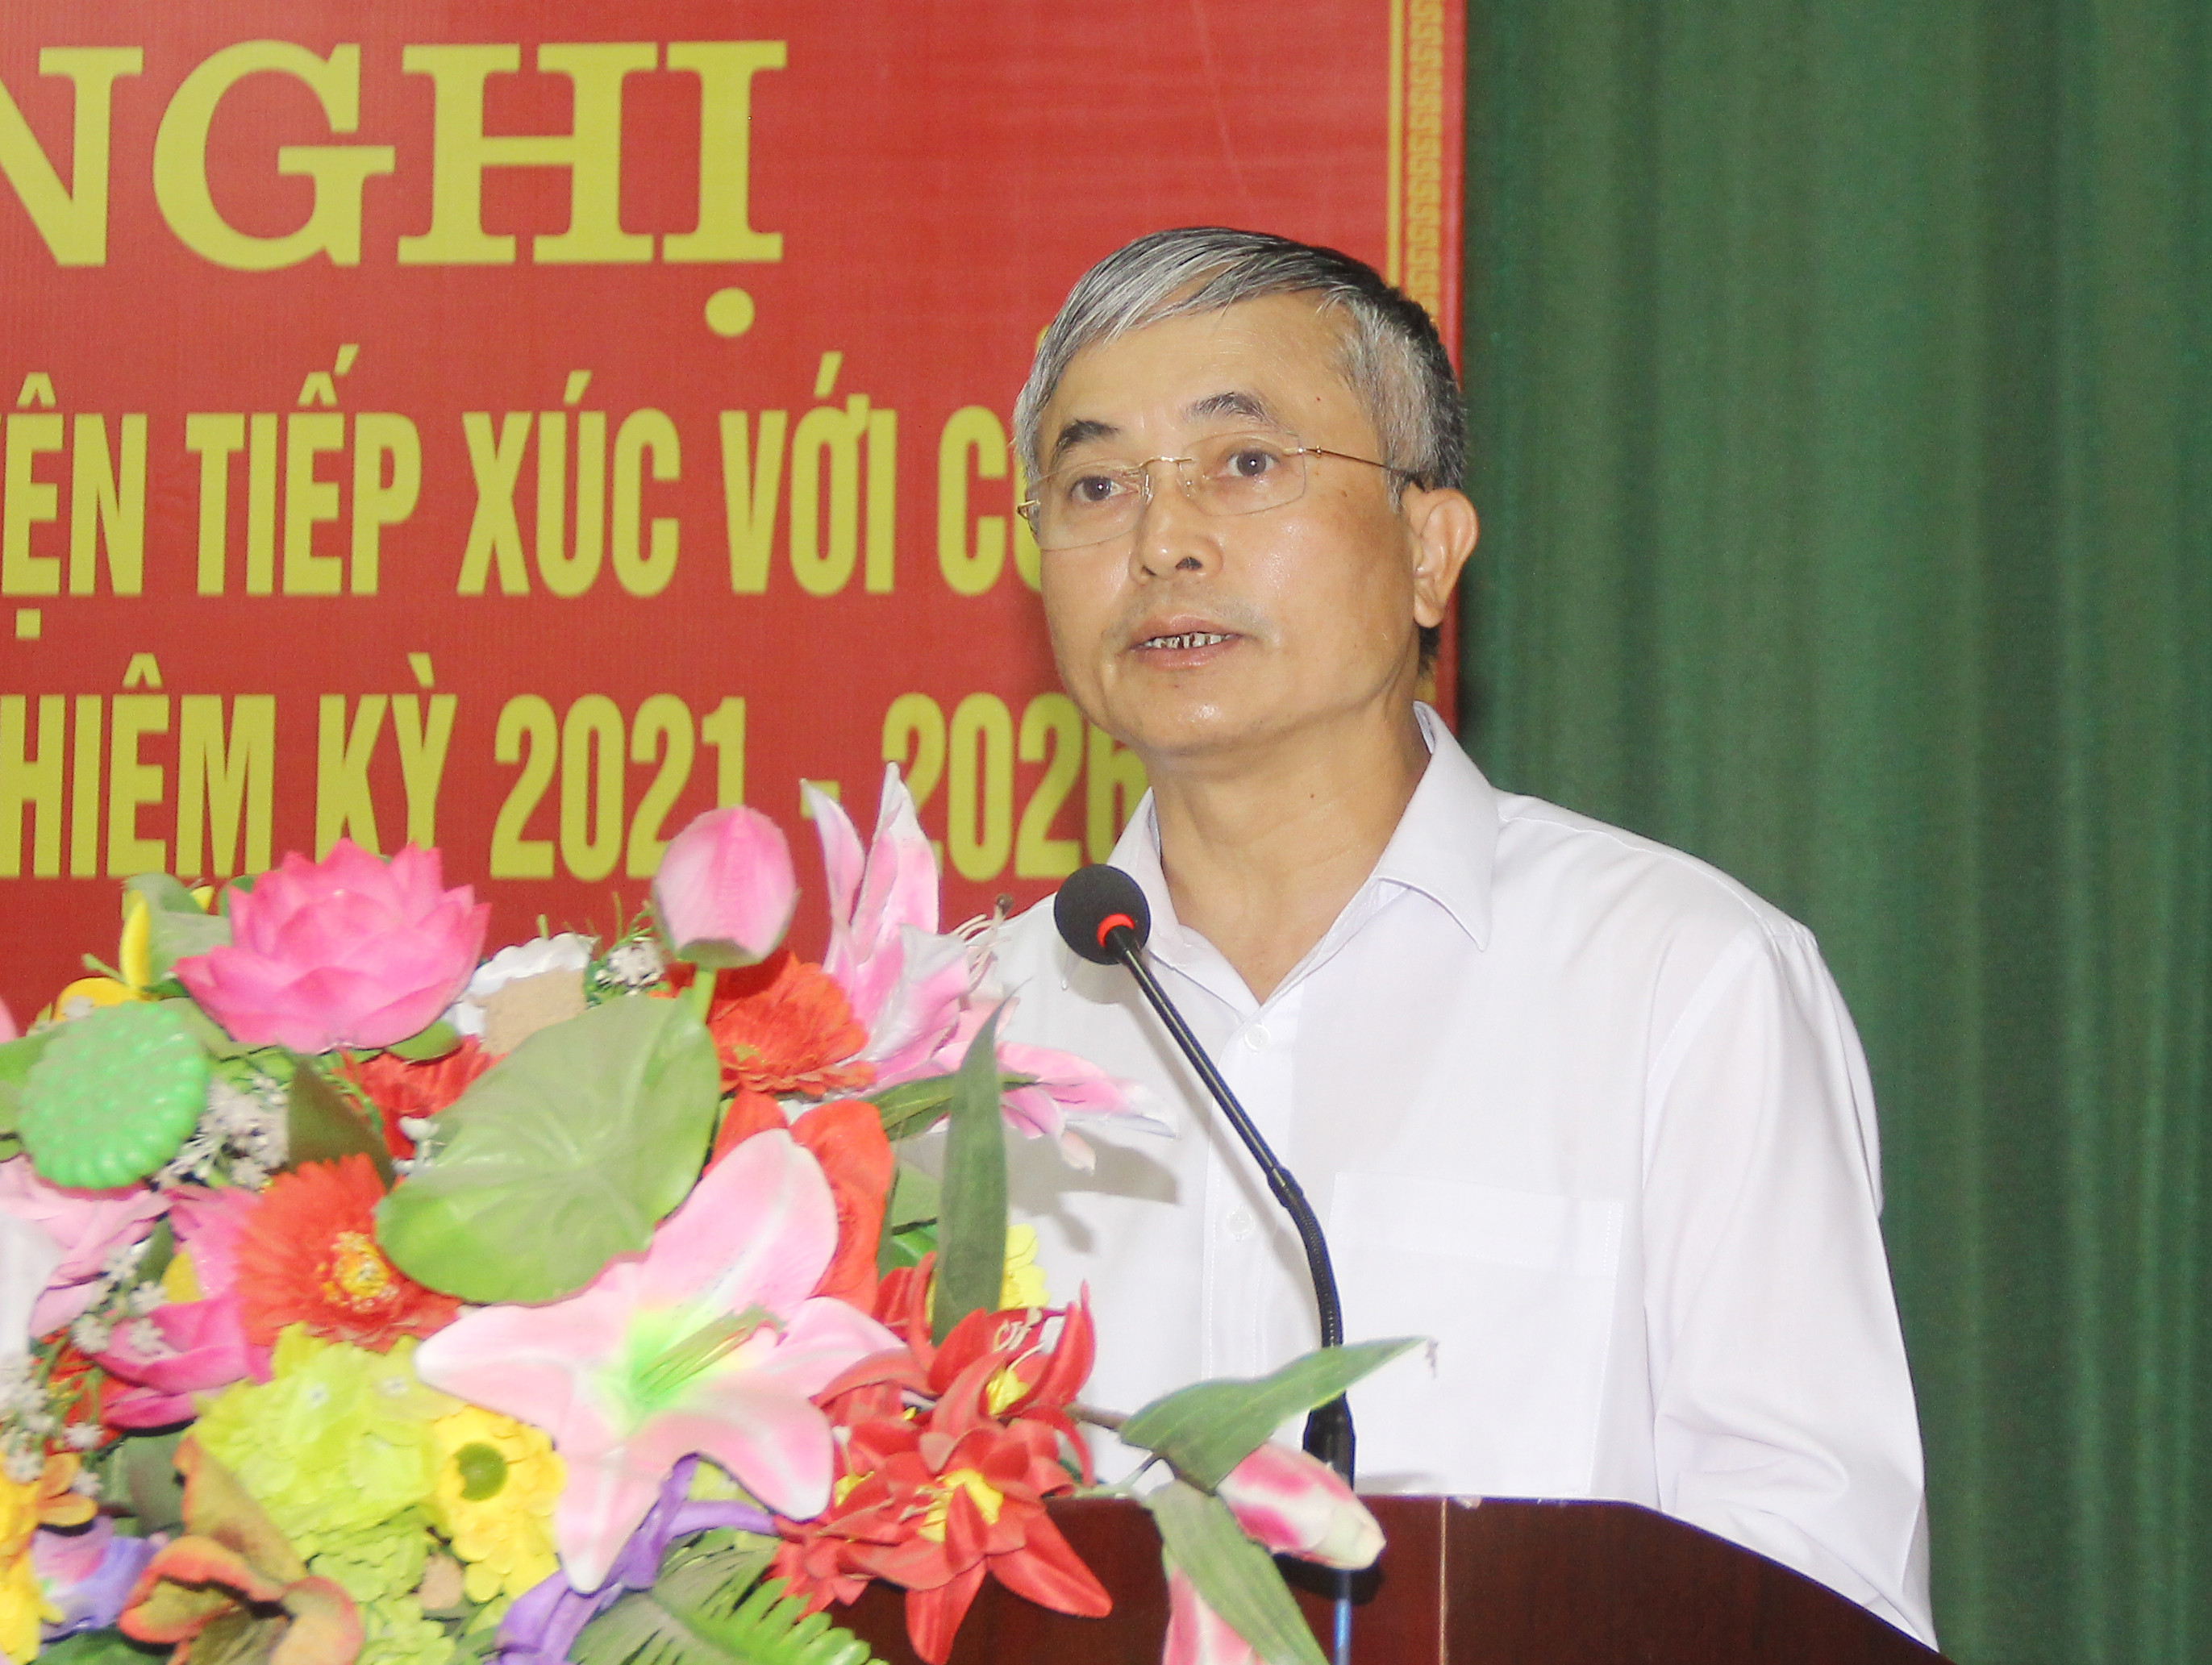 Phó Chủ tịch UBND tỉnh, Lê Ngọc Hoa giải trình các vấn đề cử tri quan tâm. Ảnh: Mai Hoa